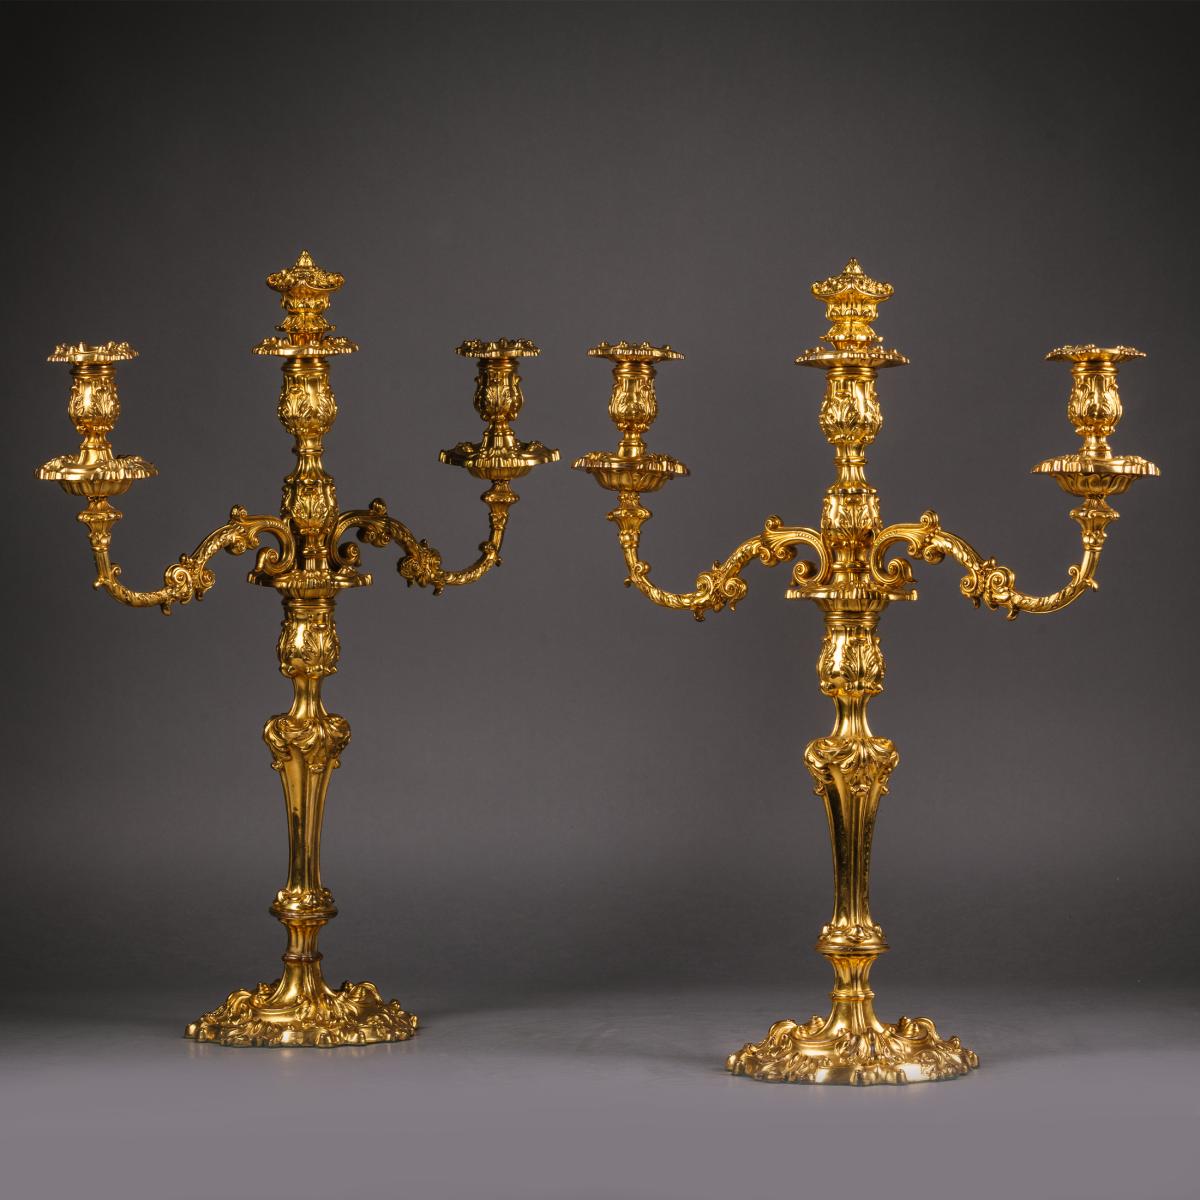 A Pair of Louis XV Style Rococo Revival Ormolu Three-Light Candelabra.  English, Circa 1860.